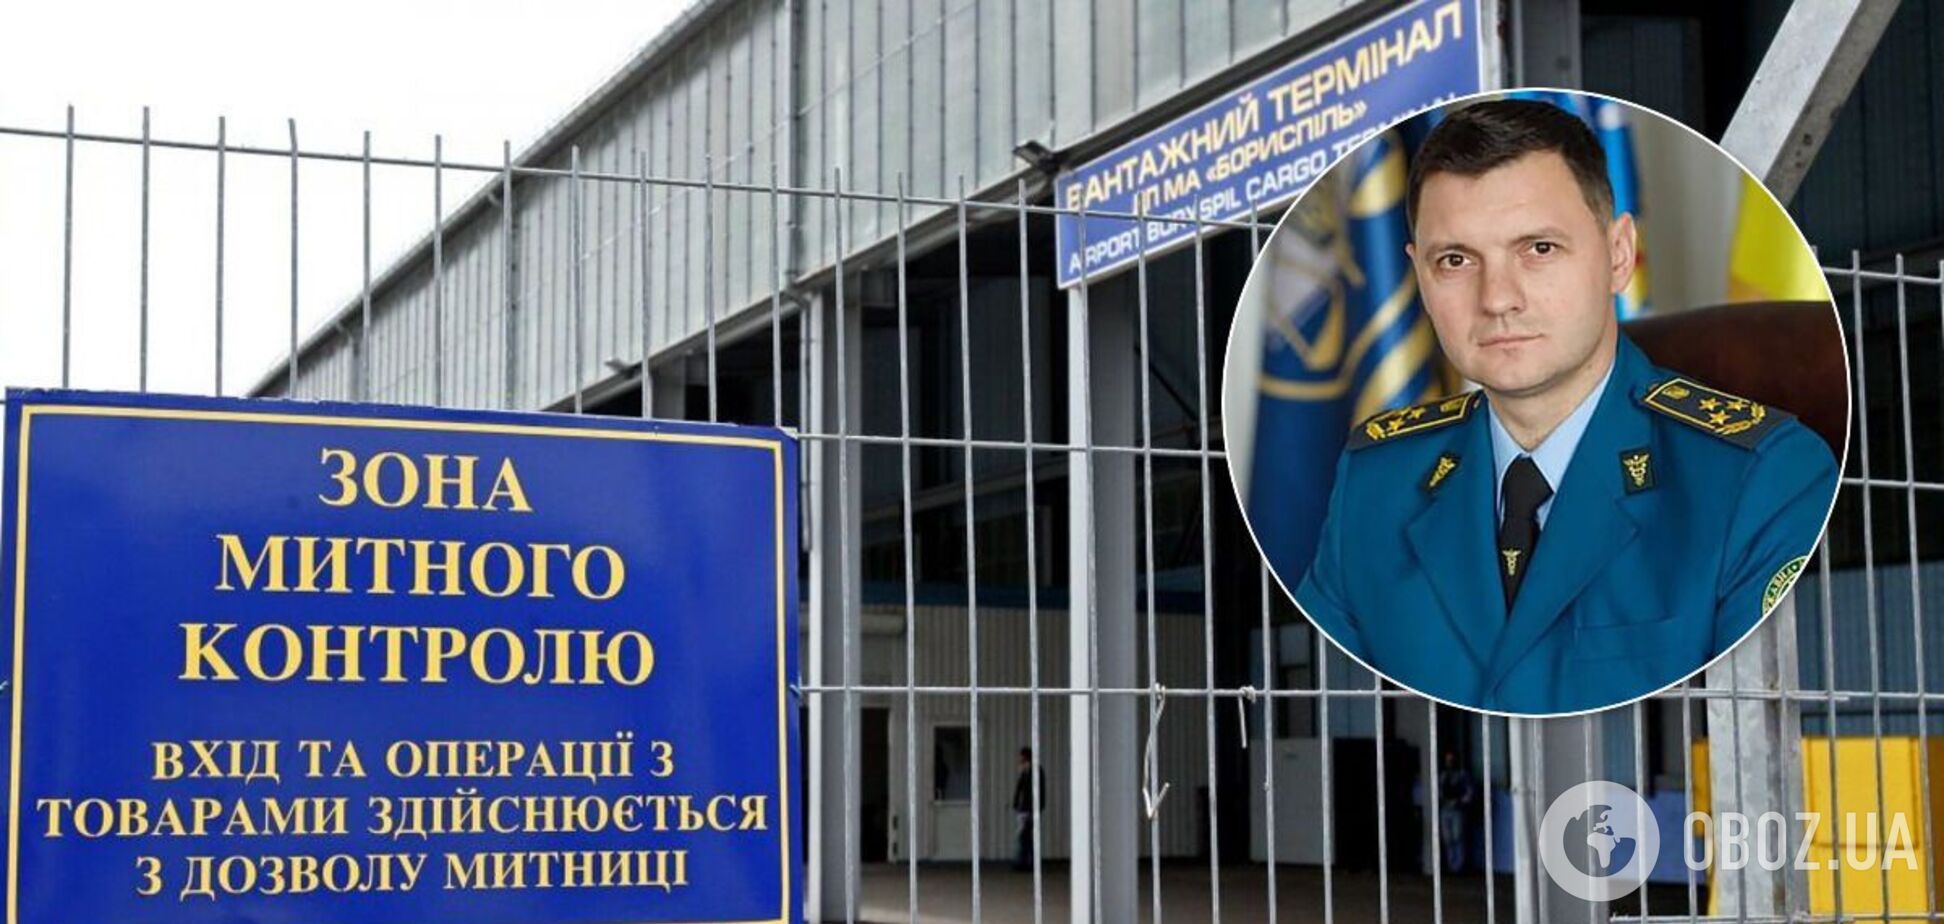 Одіозний Слічко очолив Київську митницю: до яких скандалів причетний і чий протеже